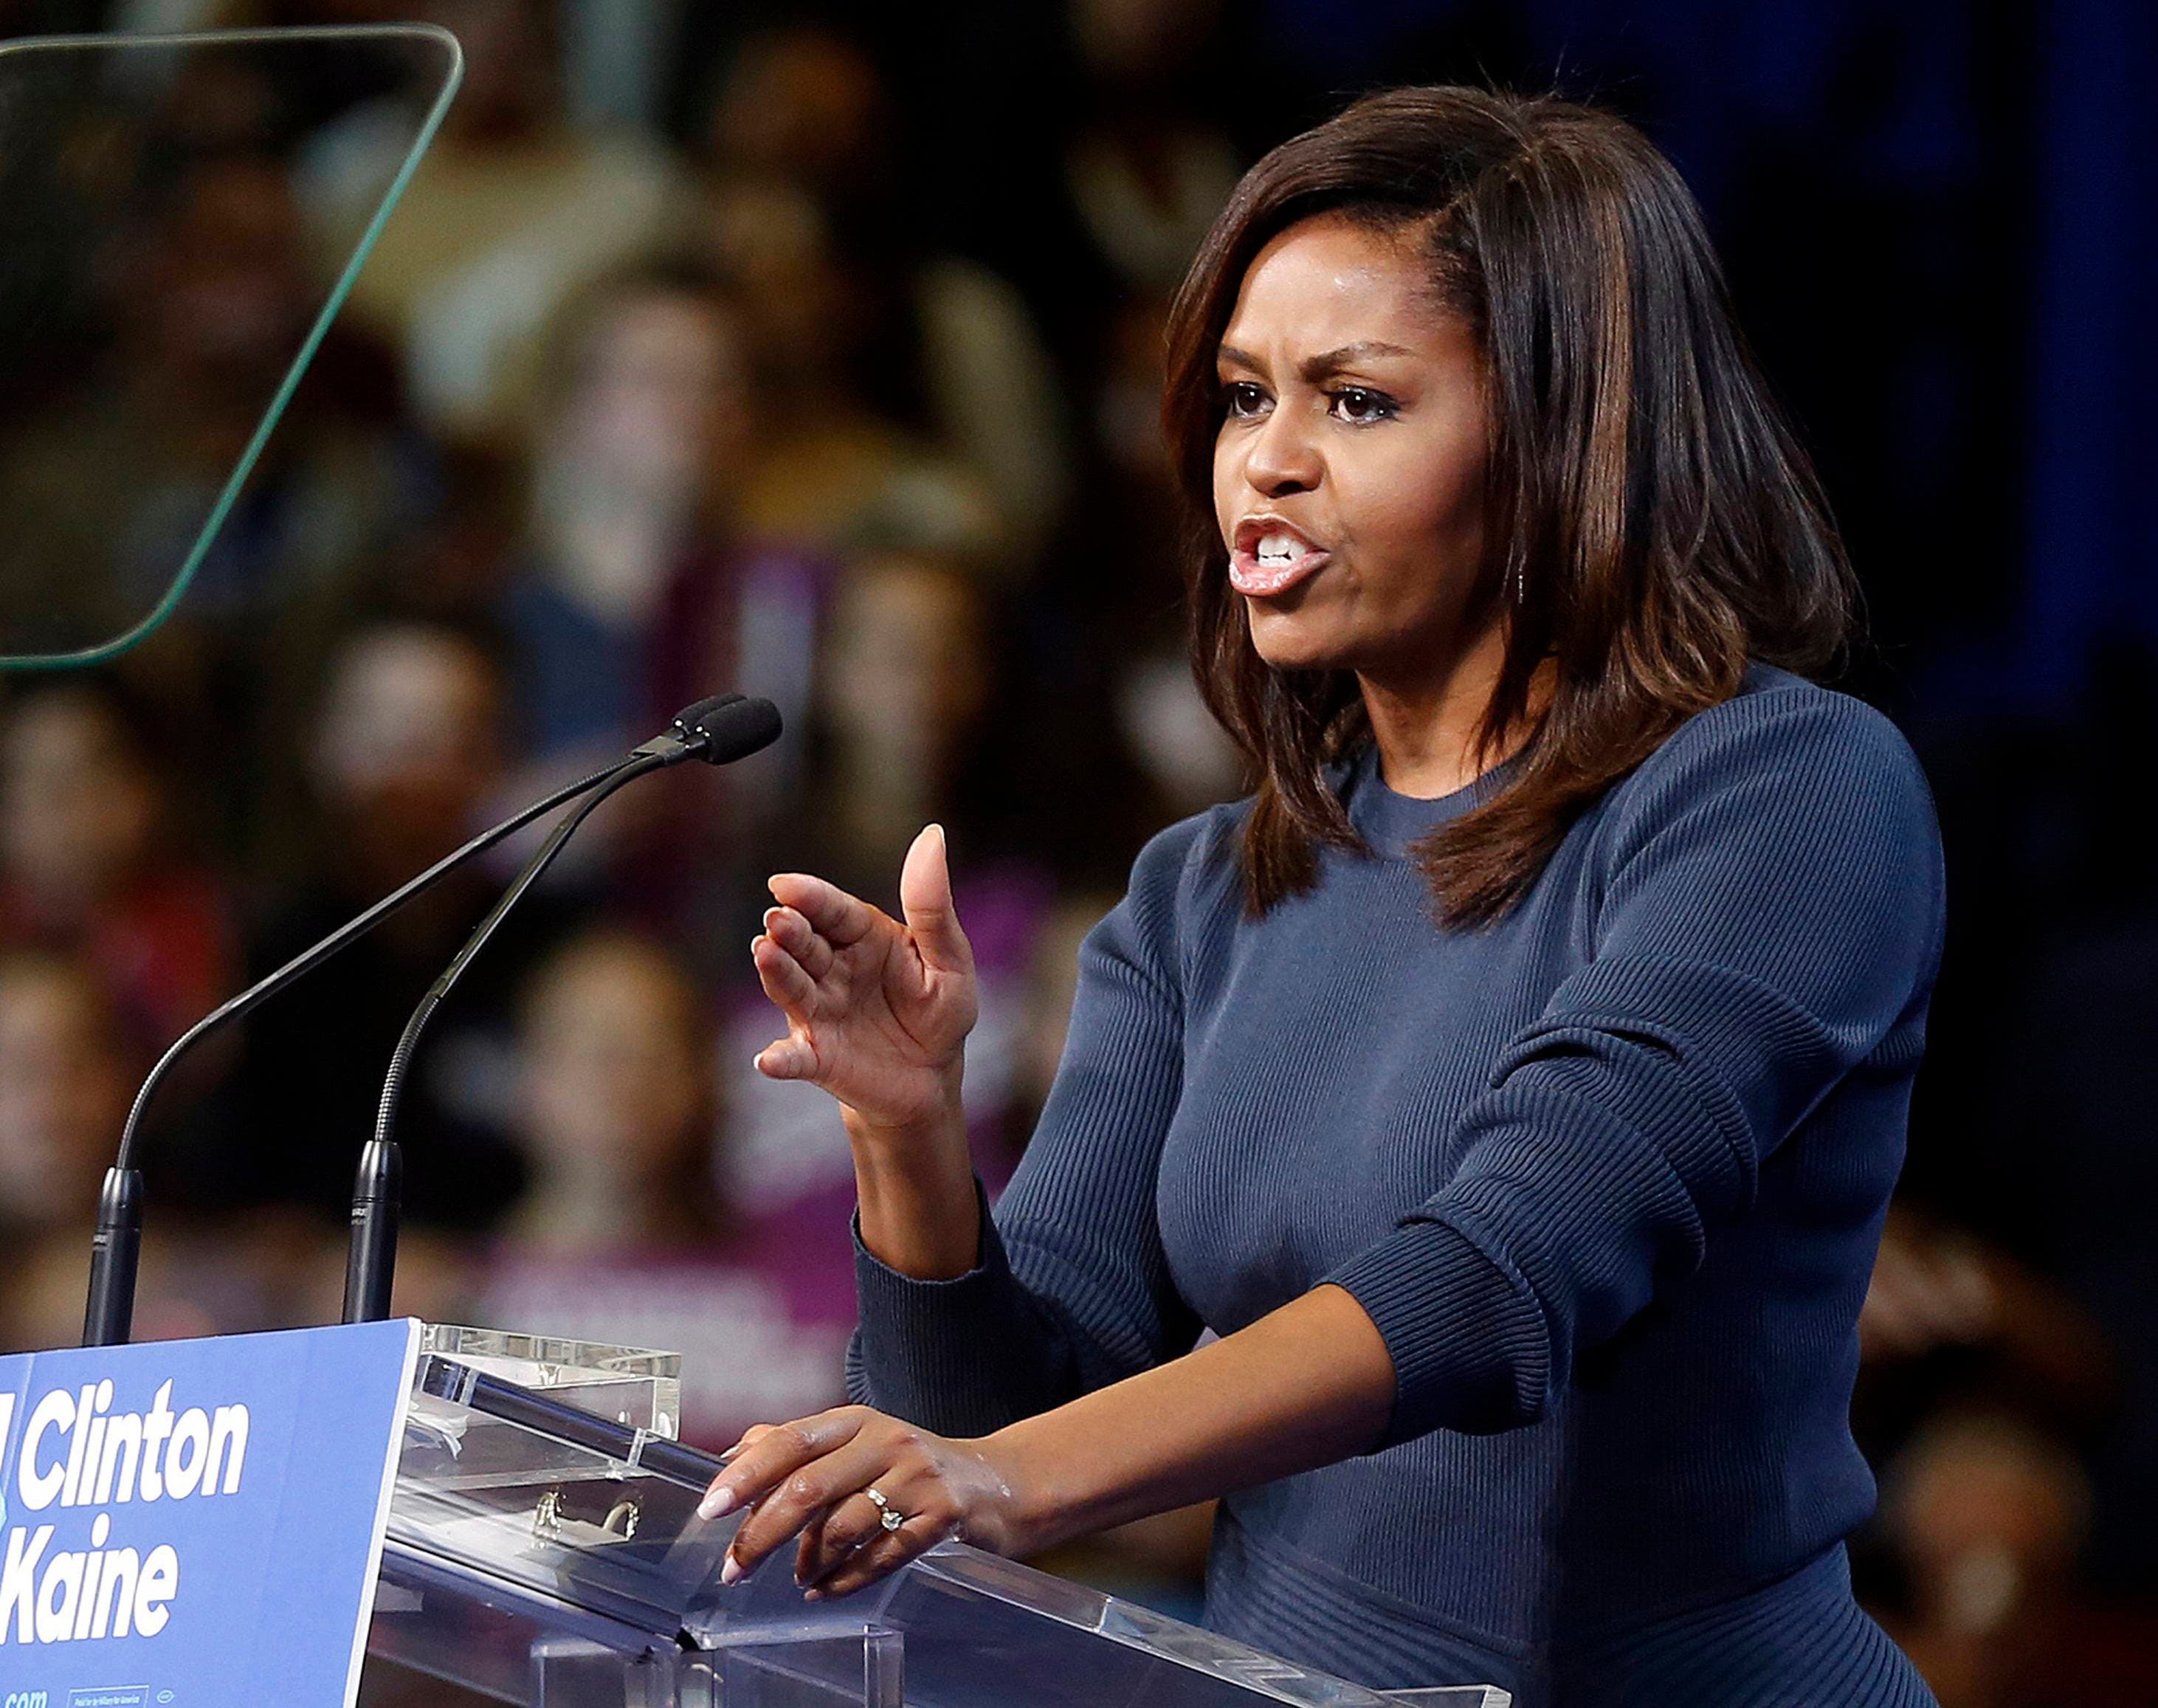 Michelle Obama urge a decir “basta” a Trump por “intolerable” trato a mujeres